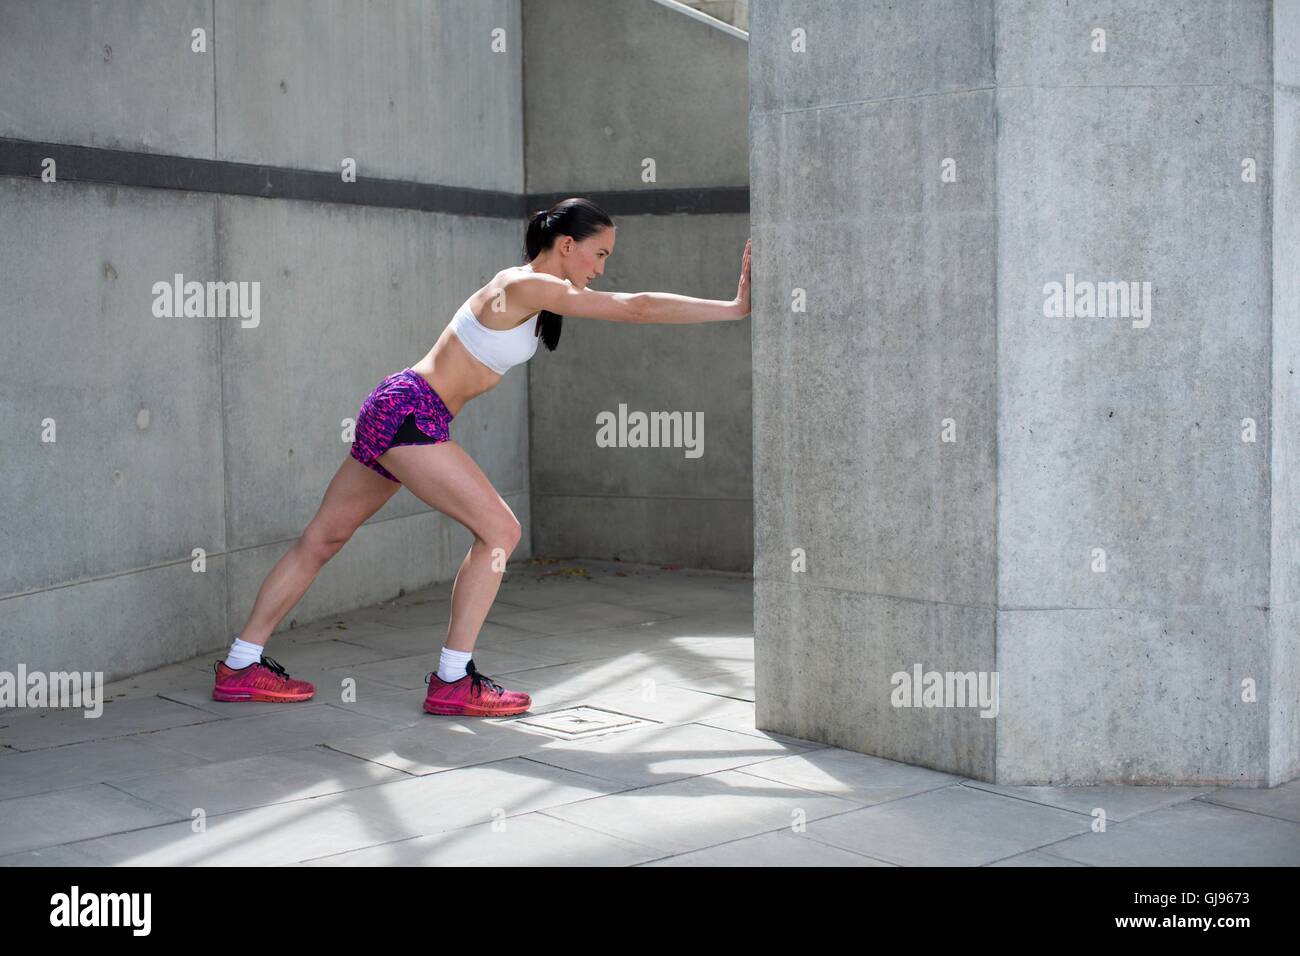 Parution du modèle. Young woman stretching contre mur. Banque D'Images